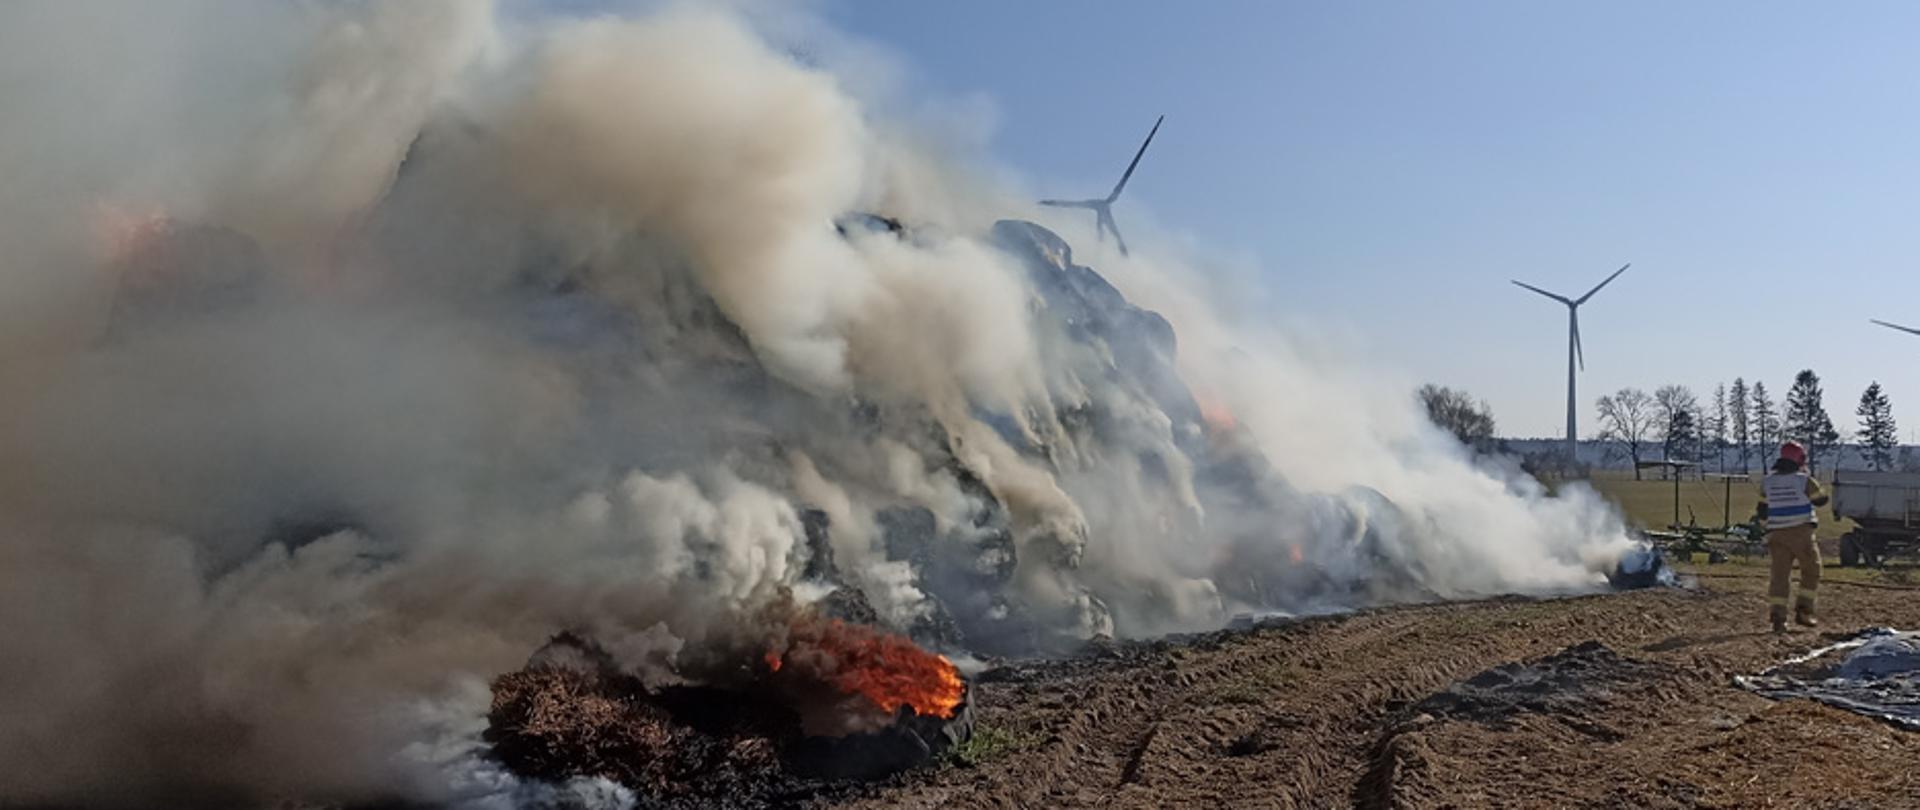 Gęsty dym unoszący się nad stertą balotów, obok strażak i przyczepa ciągnikowa